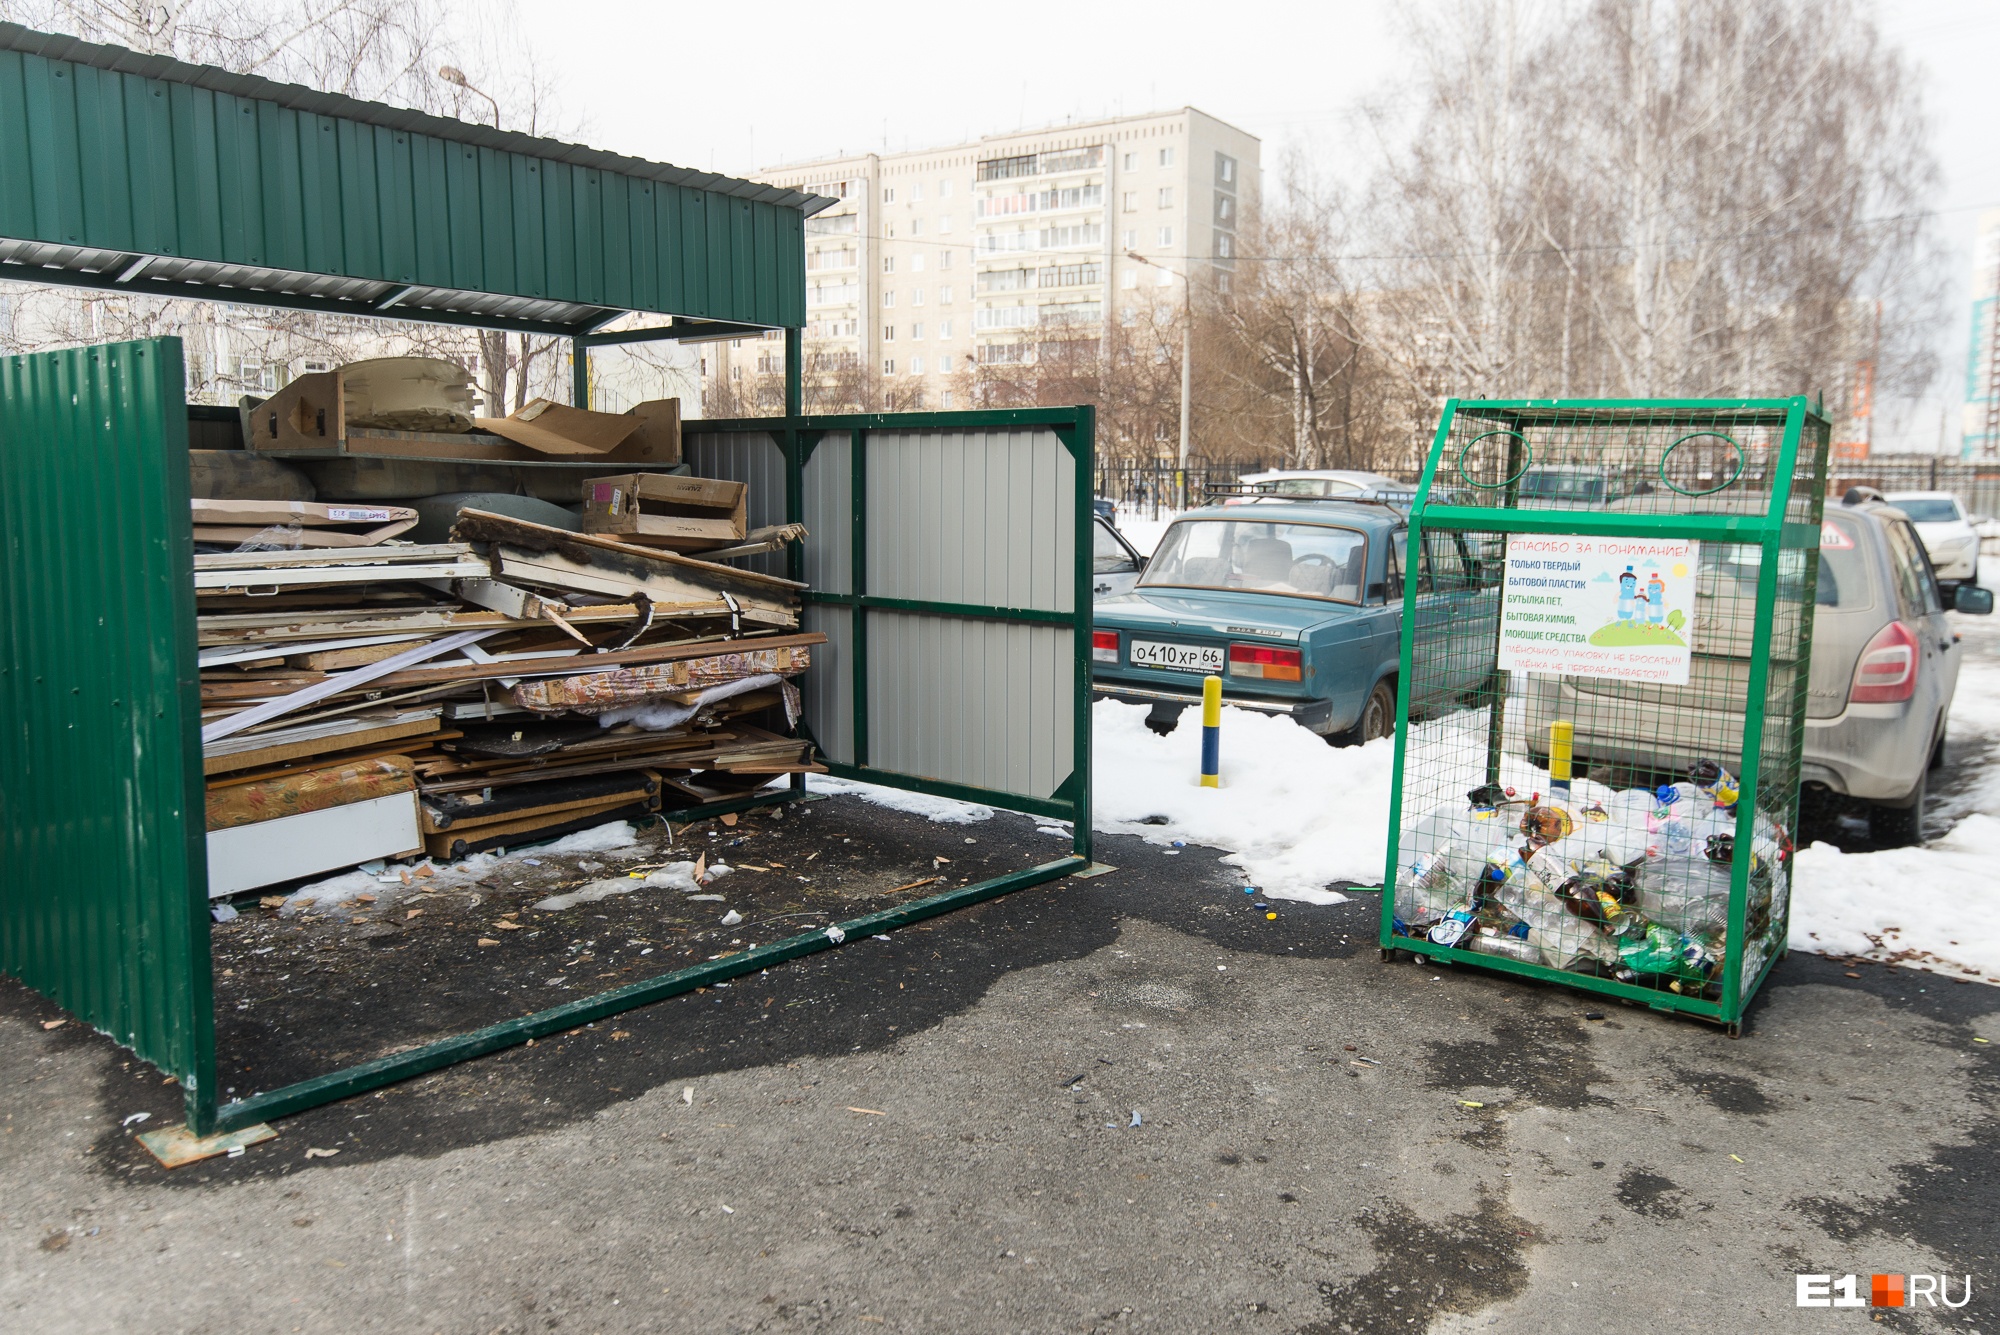 Готовьтесь сортировать: летом мусор в Екатеринбурге придется раскладывать по отдельным контейнерам